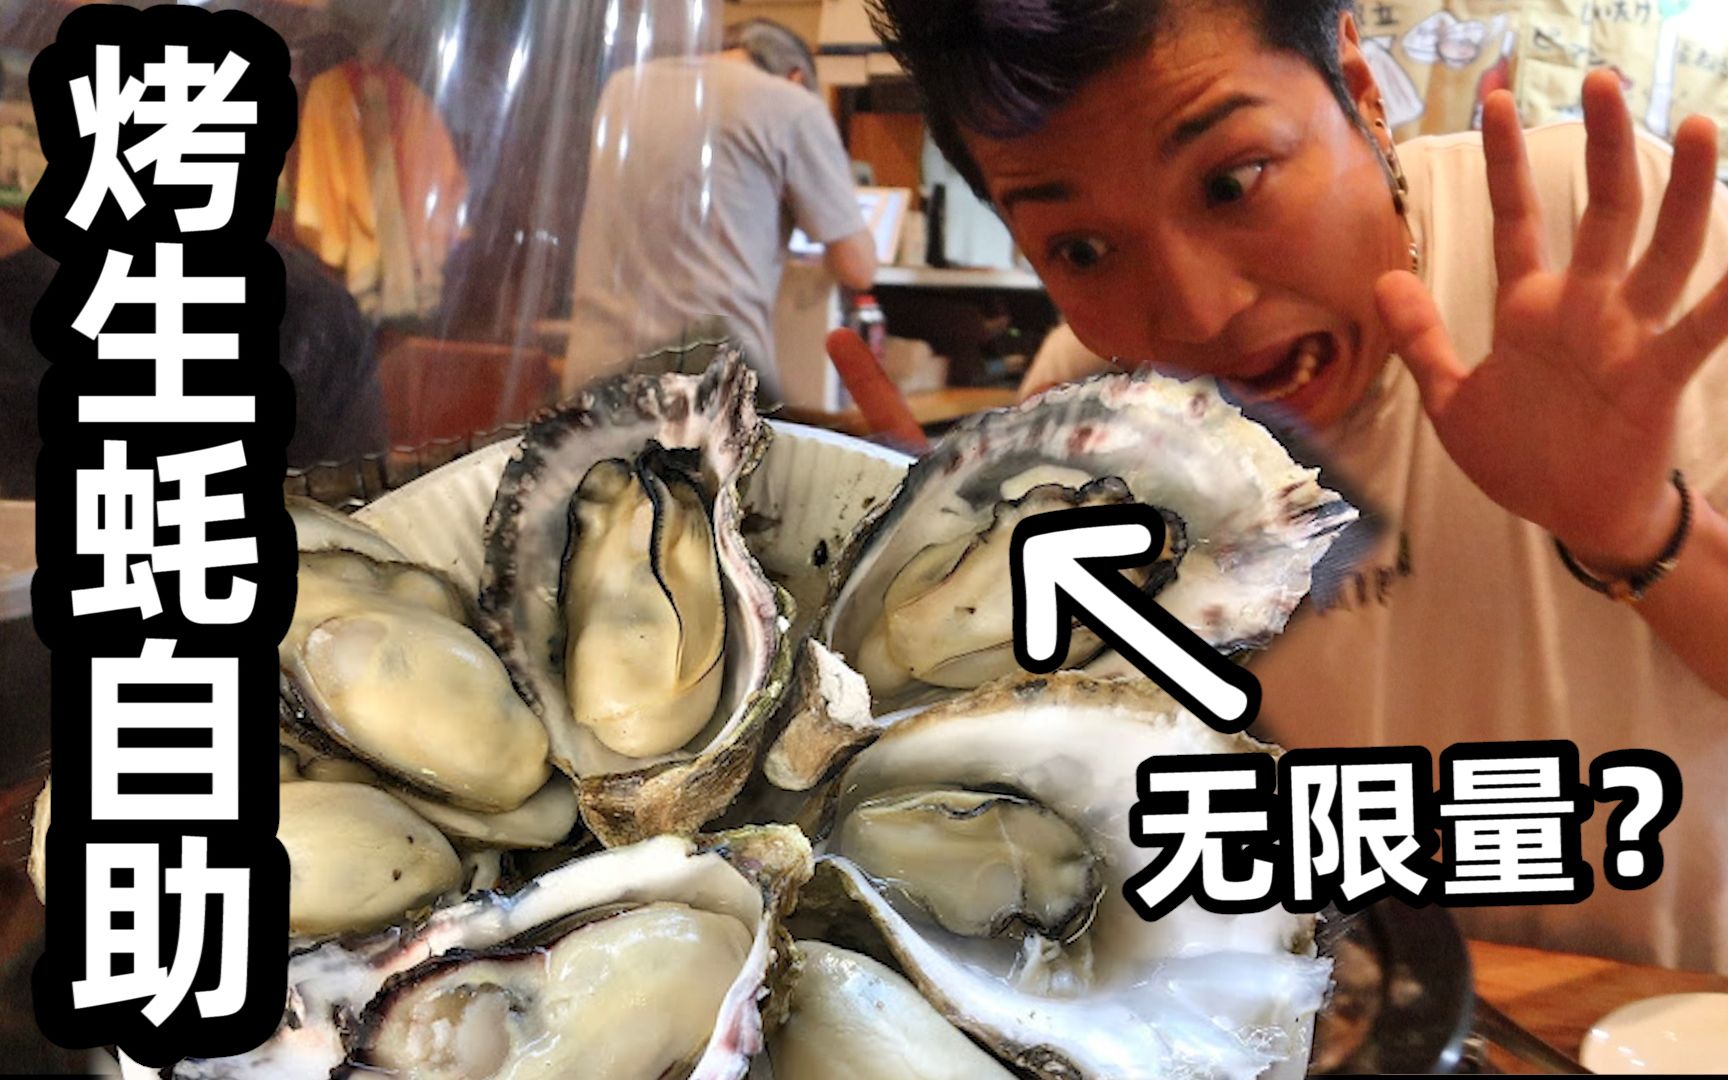 3700日元一位烤生蚝自助，2个小时随便吃，男子为了吃回本结果...